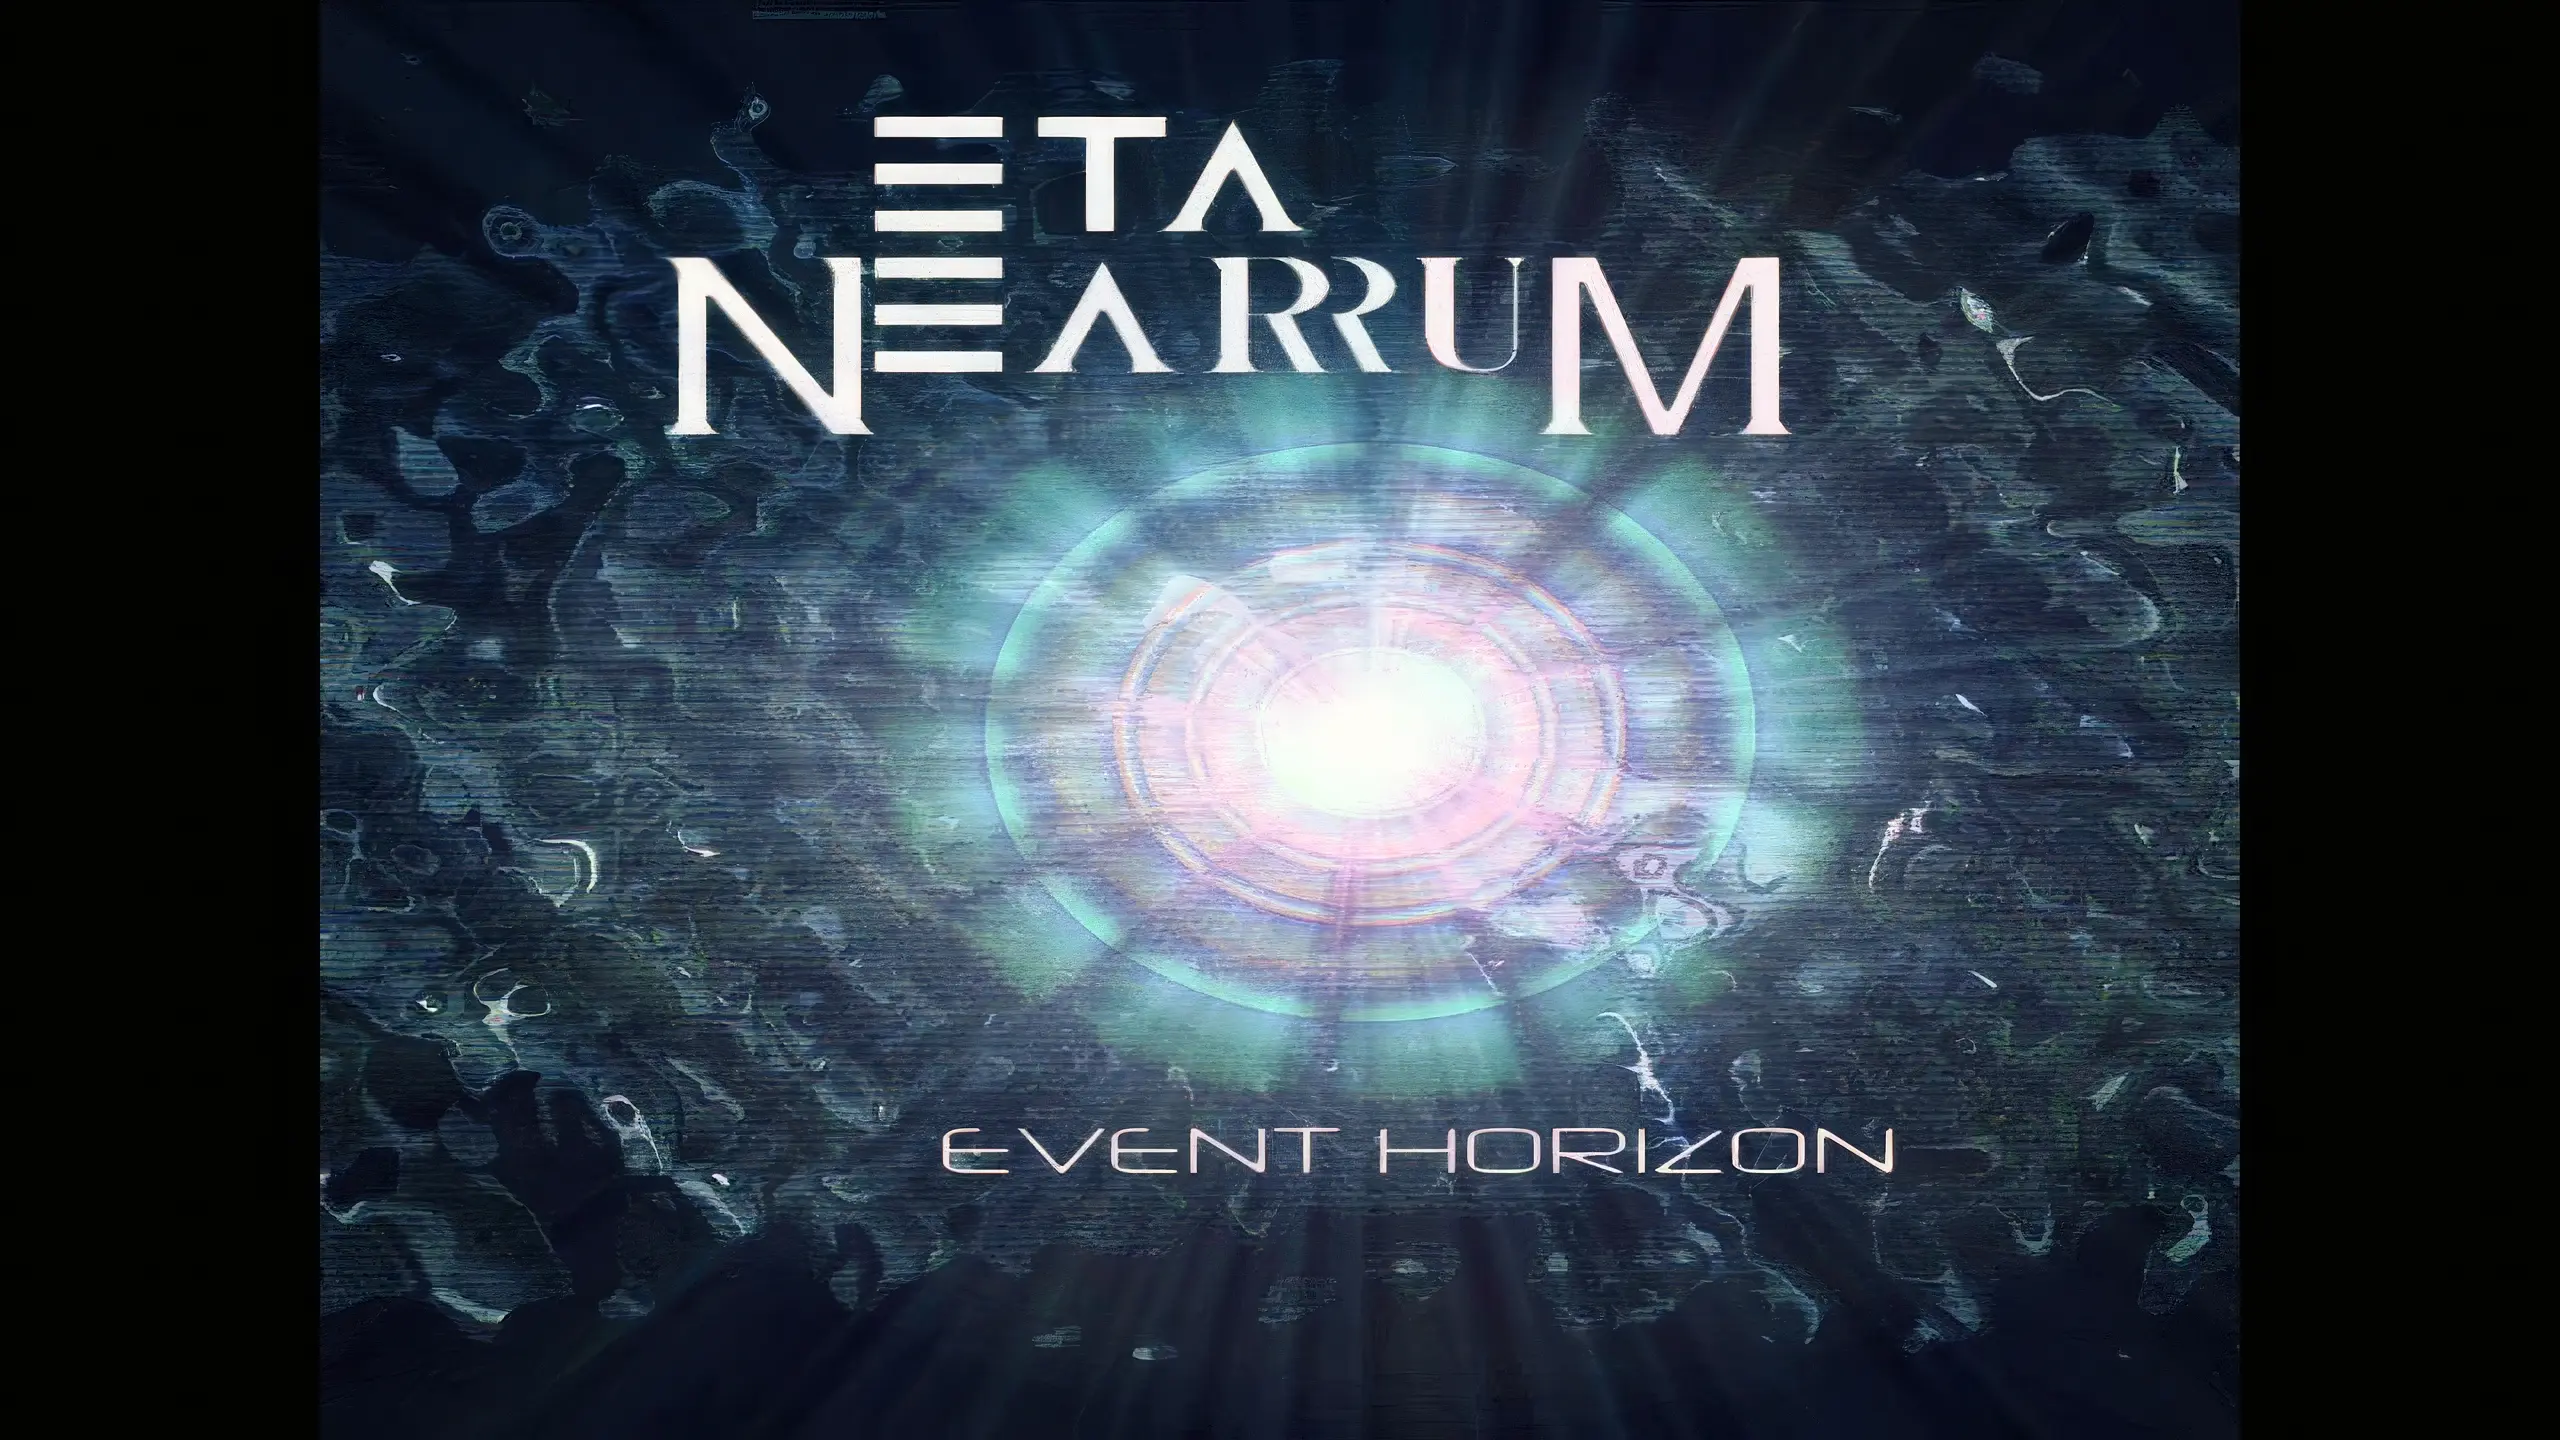 YouTube Eta Nearrum - Event Horizon demo